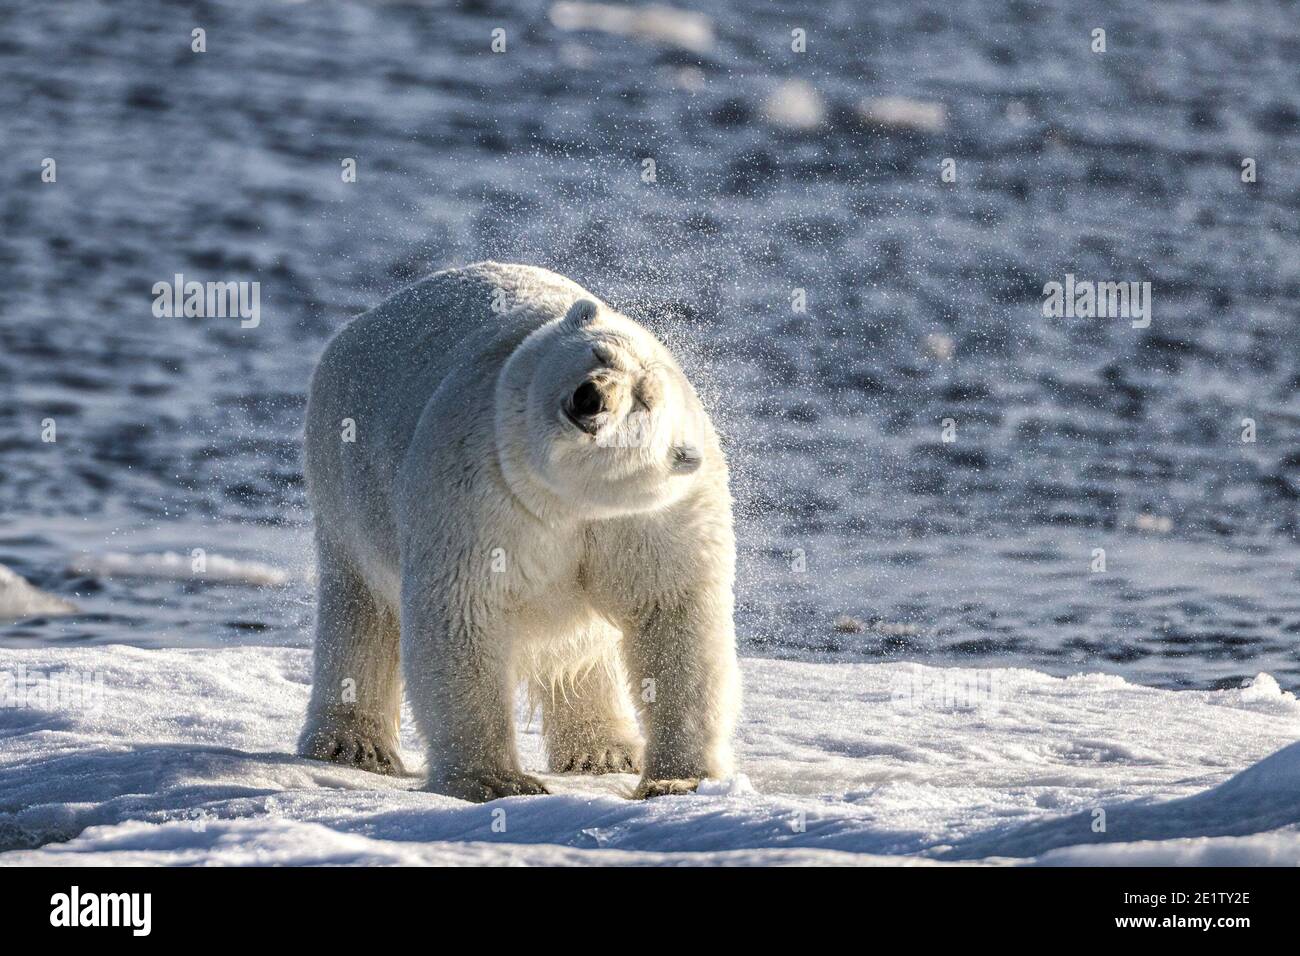 Erwachsener Eisbär, der auf einer Eisscholle steht und schüttelt Das Wasser aus seinem Fell im arktischen Ozean nördlich Spitzbergen Stockfoto